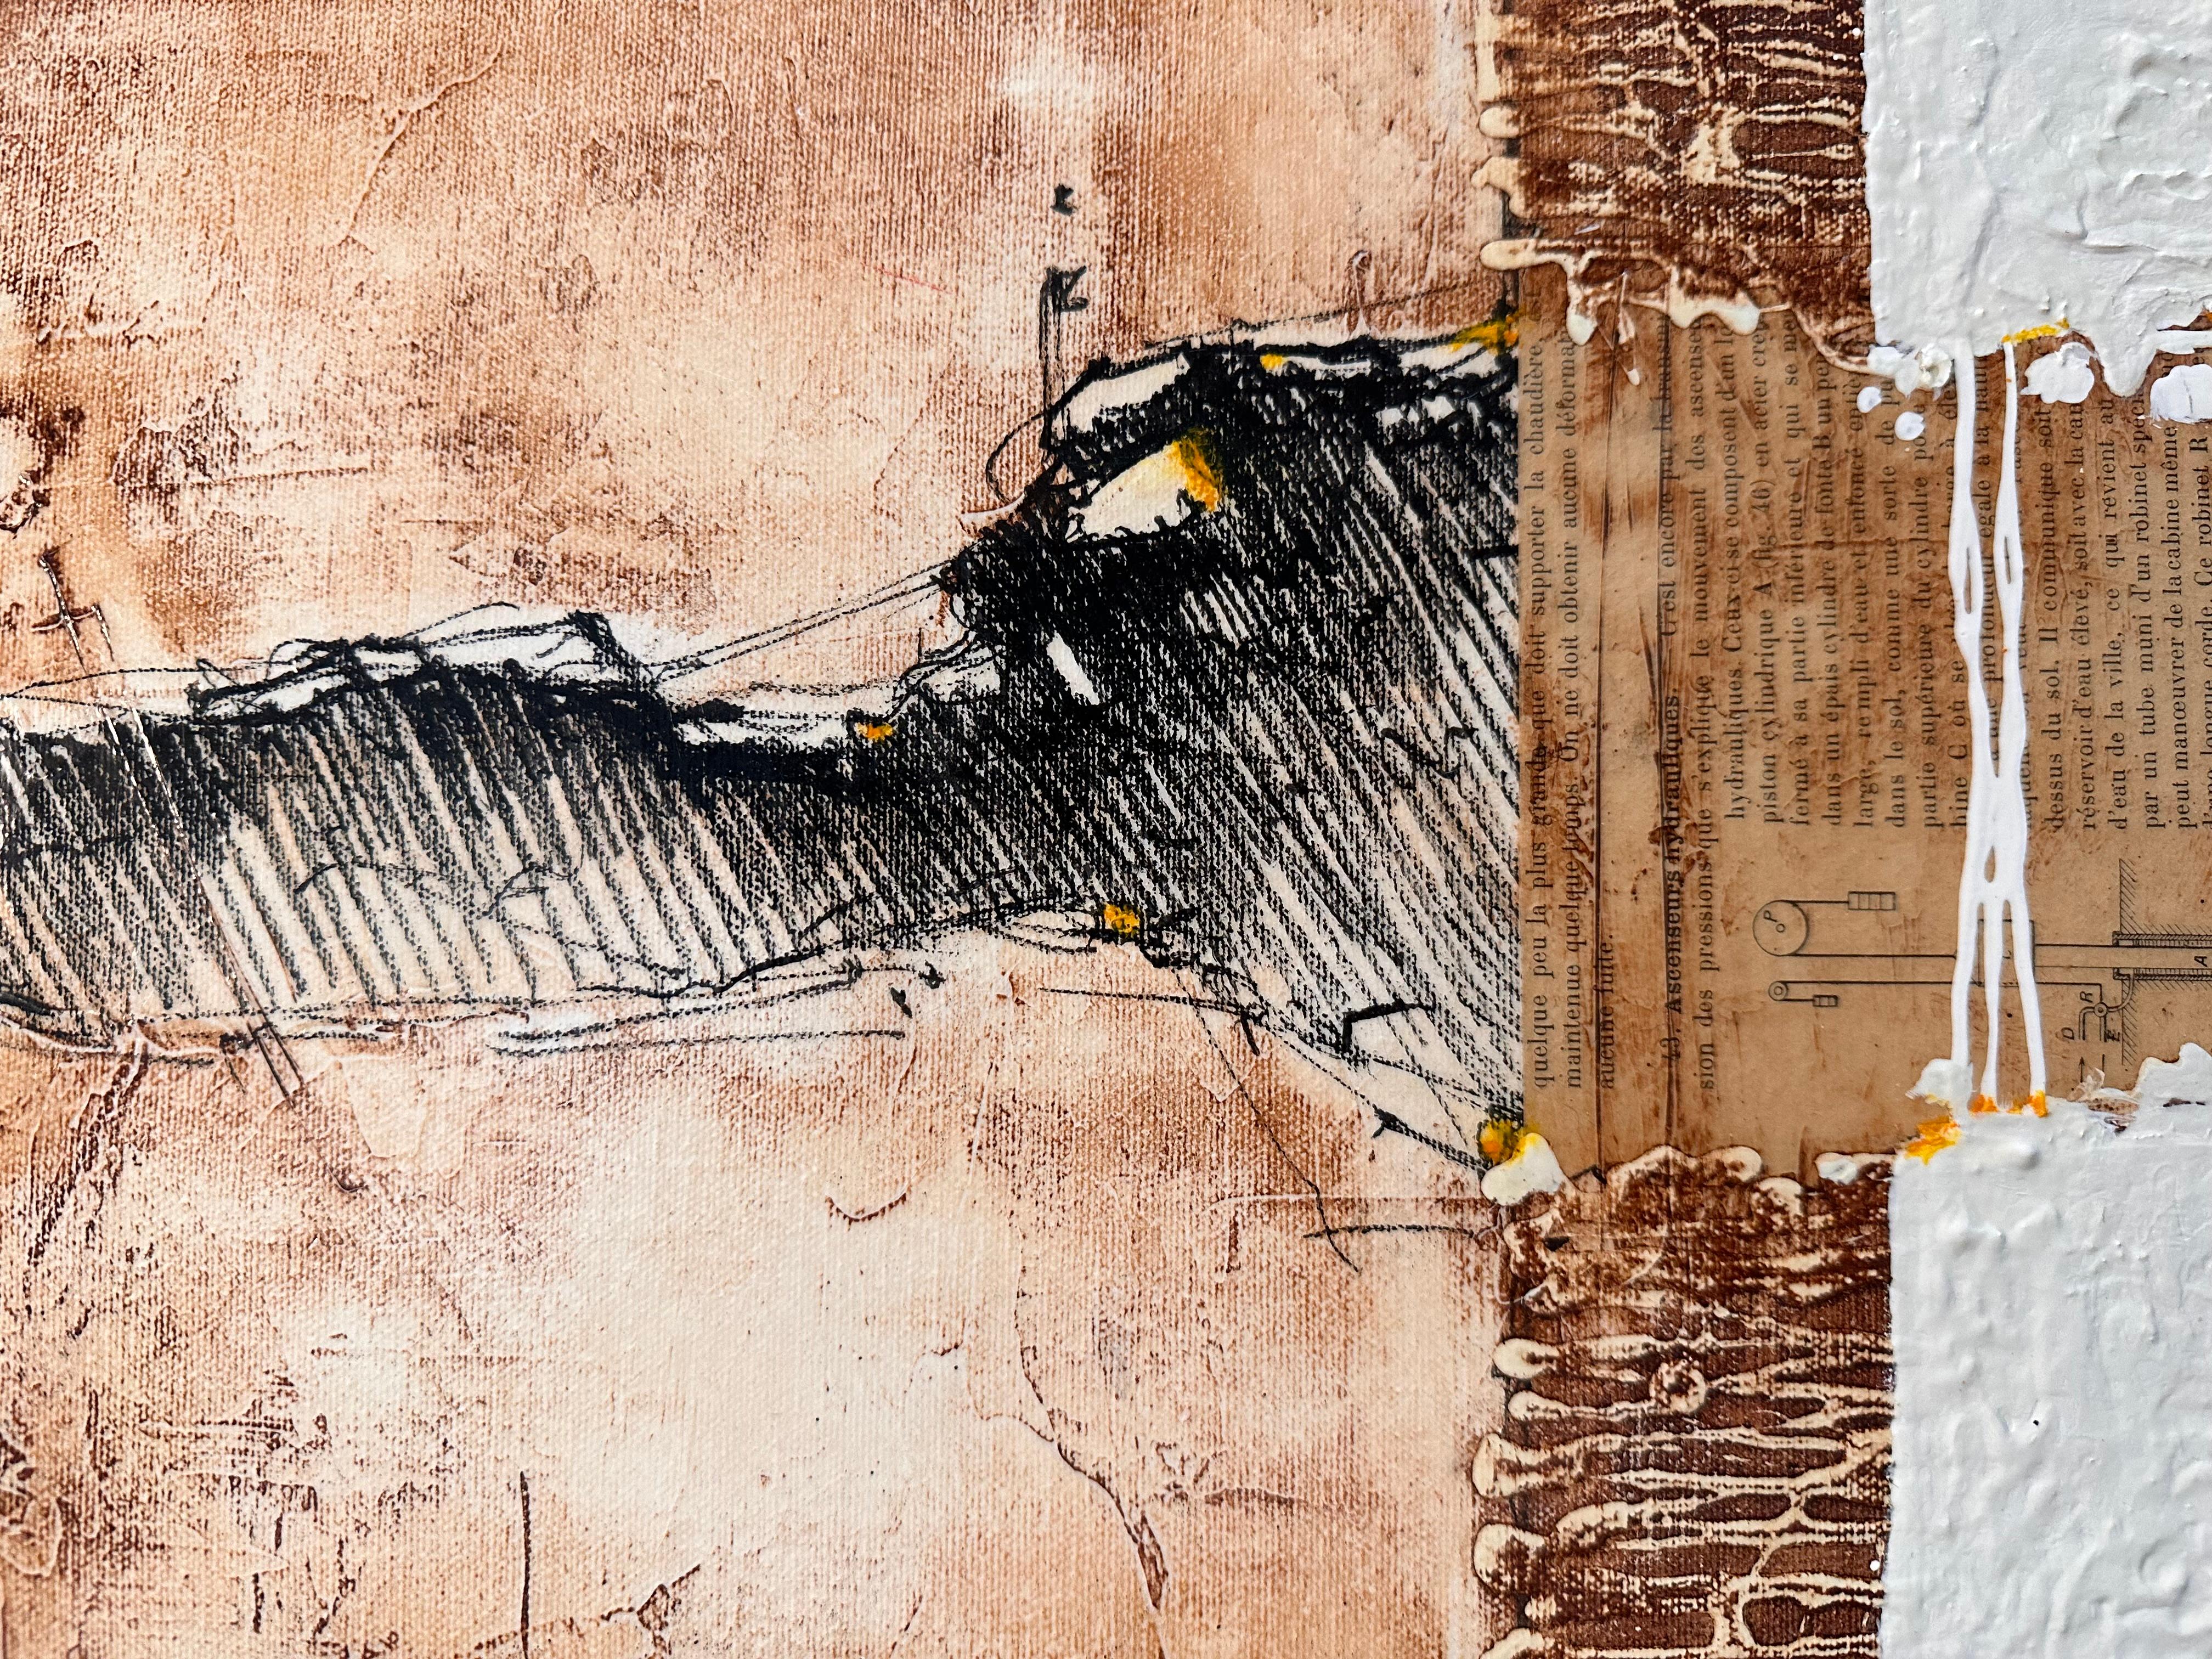 Une peinture unique de Svetlana Shalygina, composée de blanc, de violet et de brun. 
Elle incarne ses figures abstraites caractéristiques sur un fond jaune/gris vibrant, combinées à une gamme unique de traits, de textures et de textes